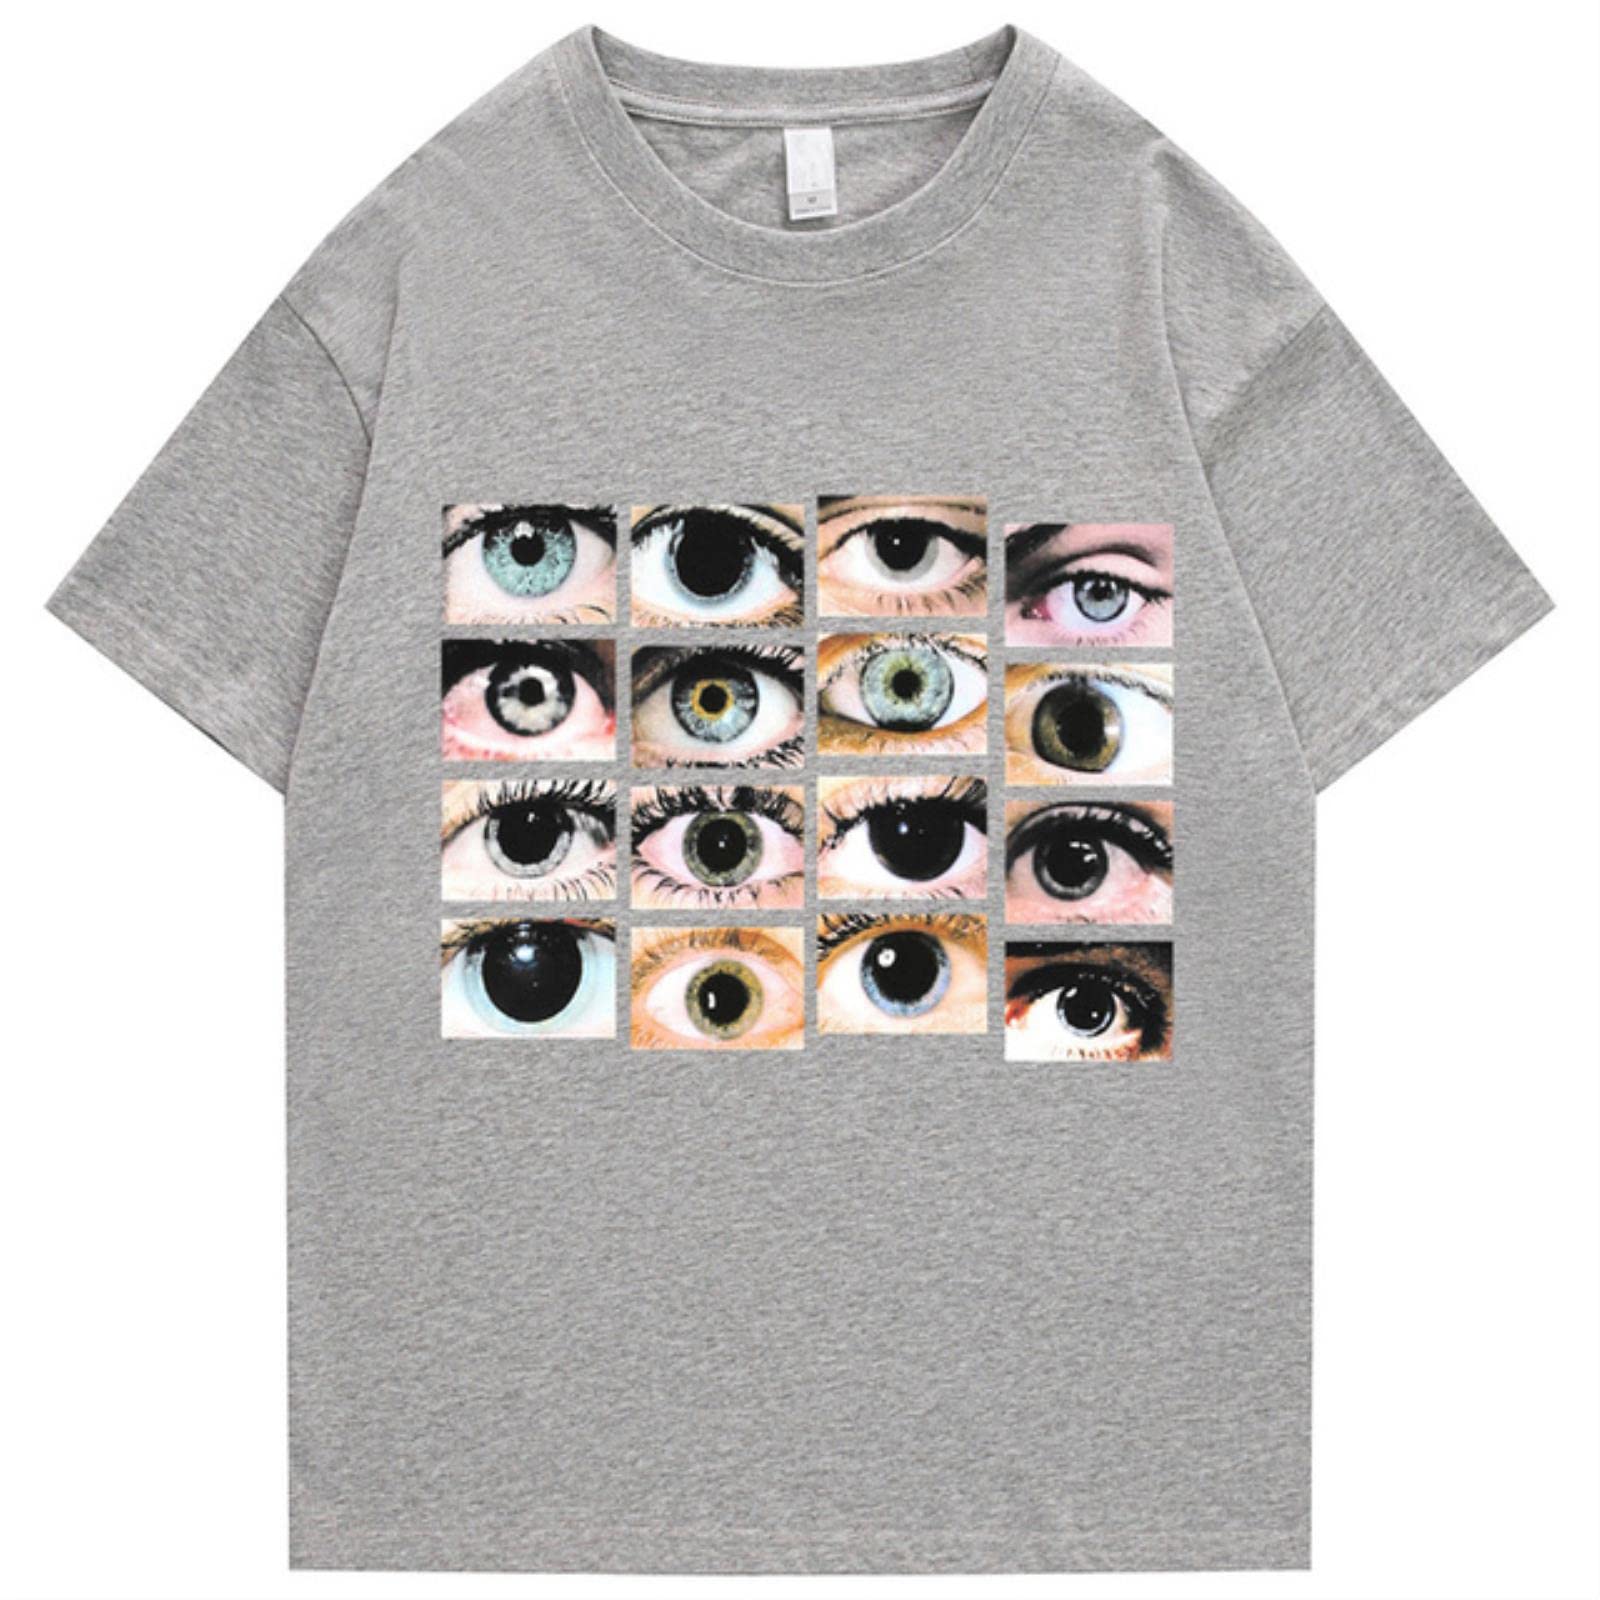 2022 Herren Hip Hop Streetwear T-Shirt Augen Bedruckt Harajuku T-Shirt Baumwolle Casual T-Shirt Sommer Kurzarm Tops T-Shirts Schwarz-Hellgrau, M